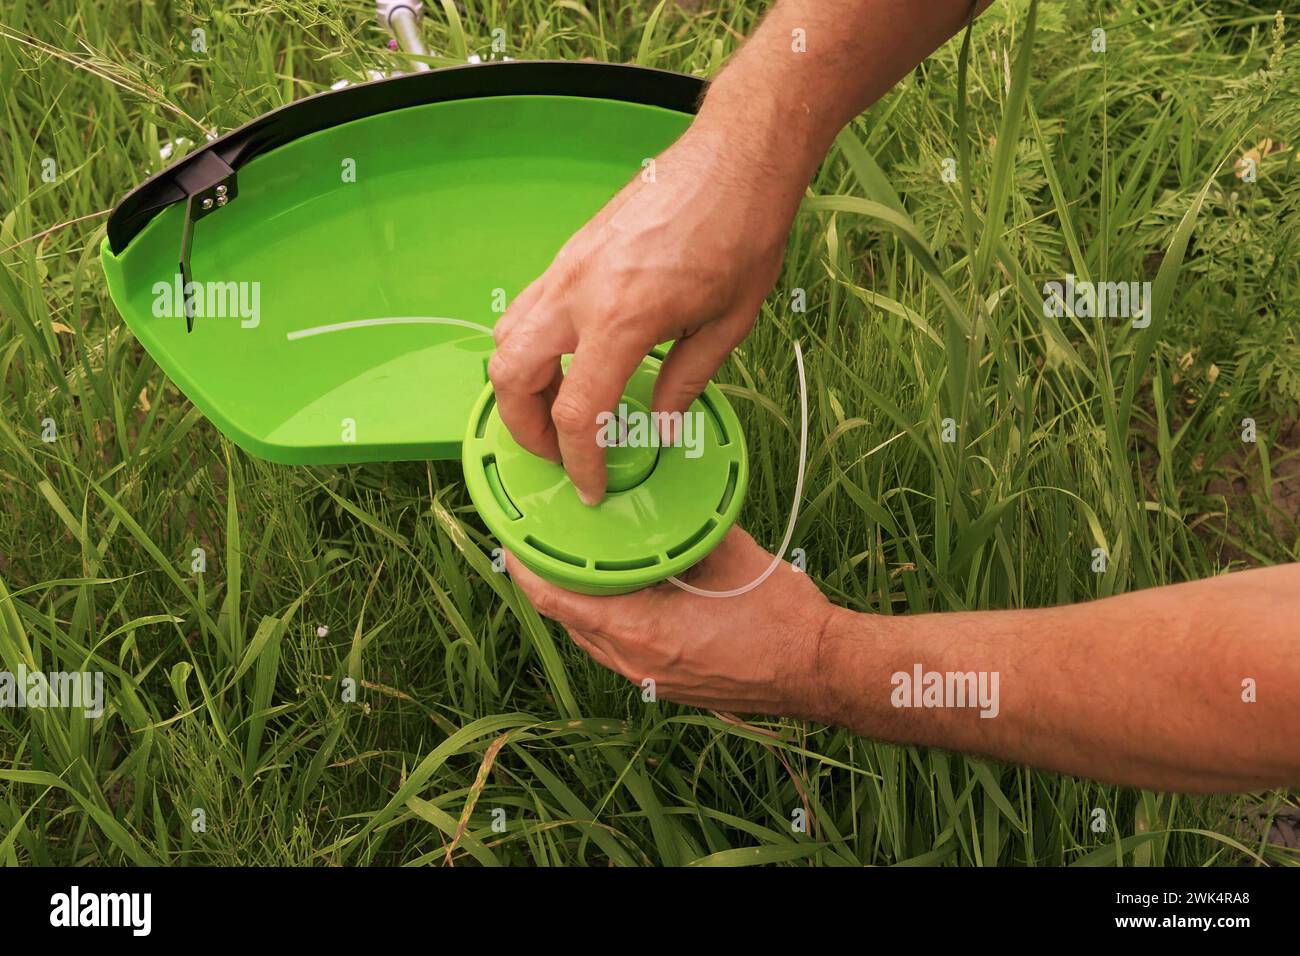 Wartung von Gartenwerkzeugen. Gärtner befestigen auf einer Wiese mit Gras eine Haspel an einem Mäher. Nahaufnahme eines Mannes, der einen Rasenmäher auseinander nimmt, um Teile auszutauschen. Ersetzen der Spule in einem Rasenmäher Stockfoto